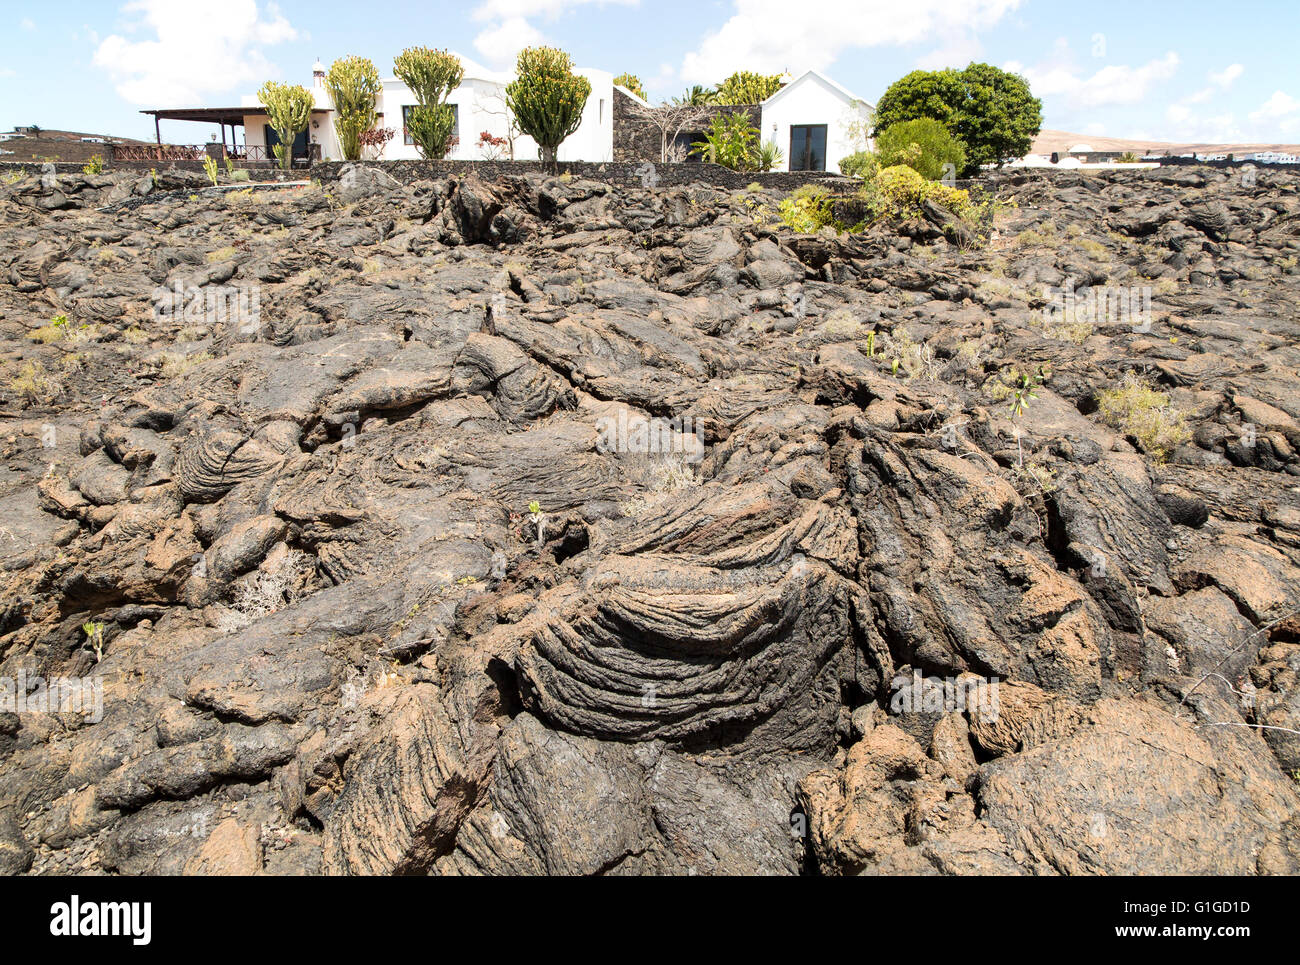 Casa in piedi in solidificato o pahoehoe ropey campo di lava, Tahiche, Lanzarote, Isole Canarie, Spagna Foto Stock